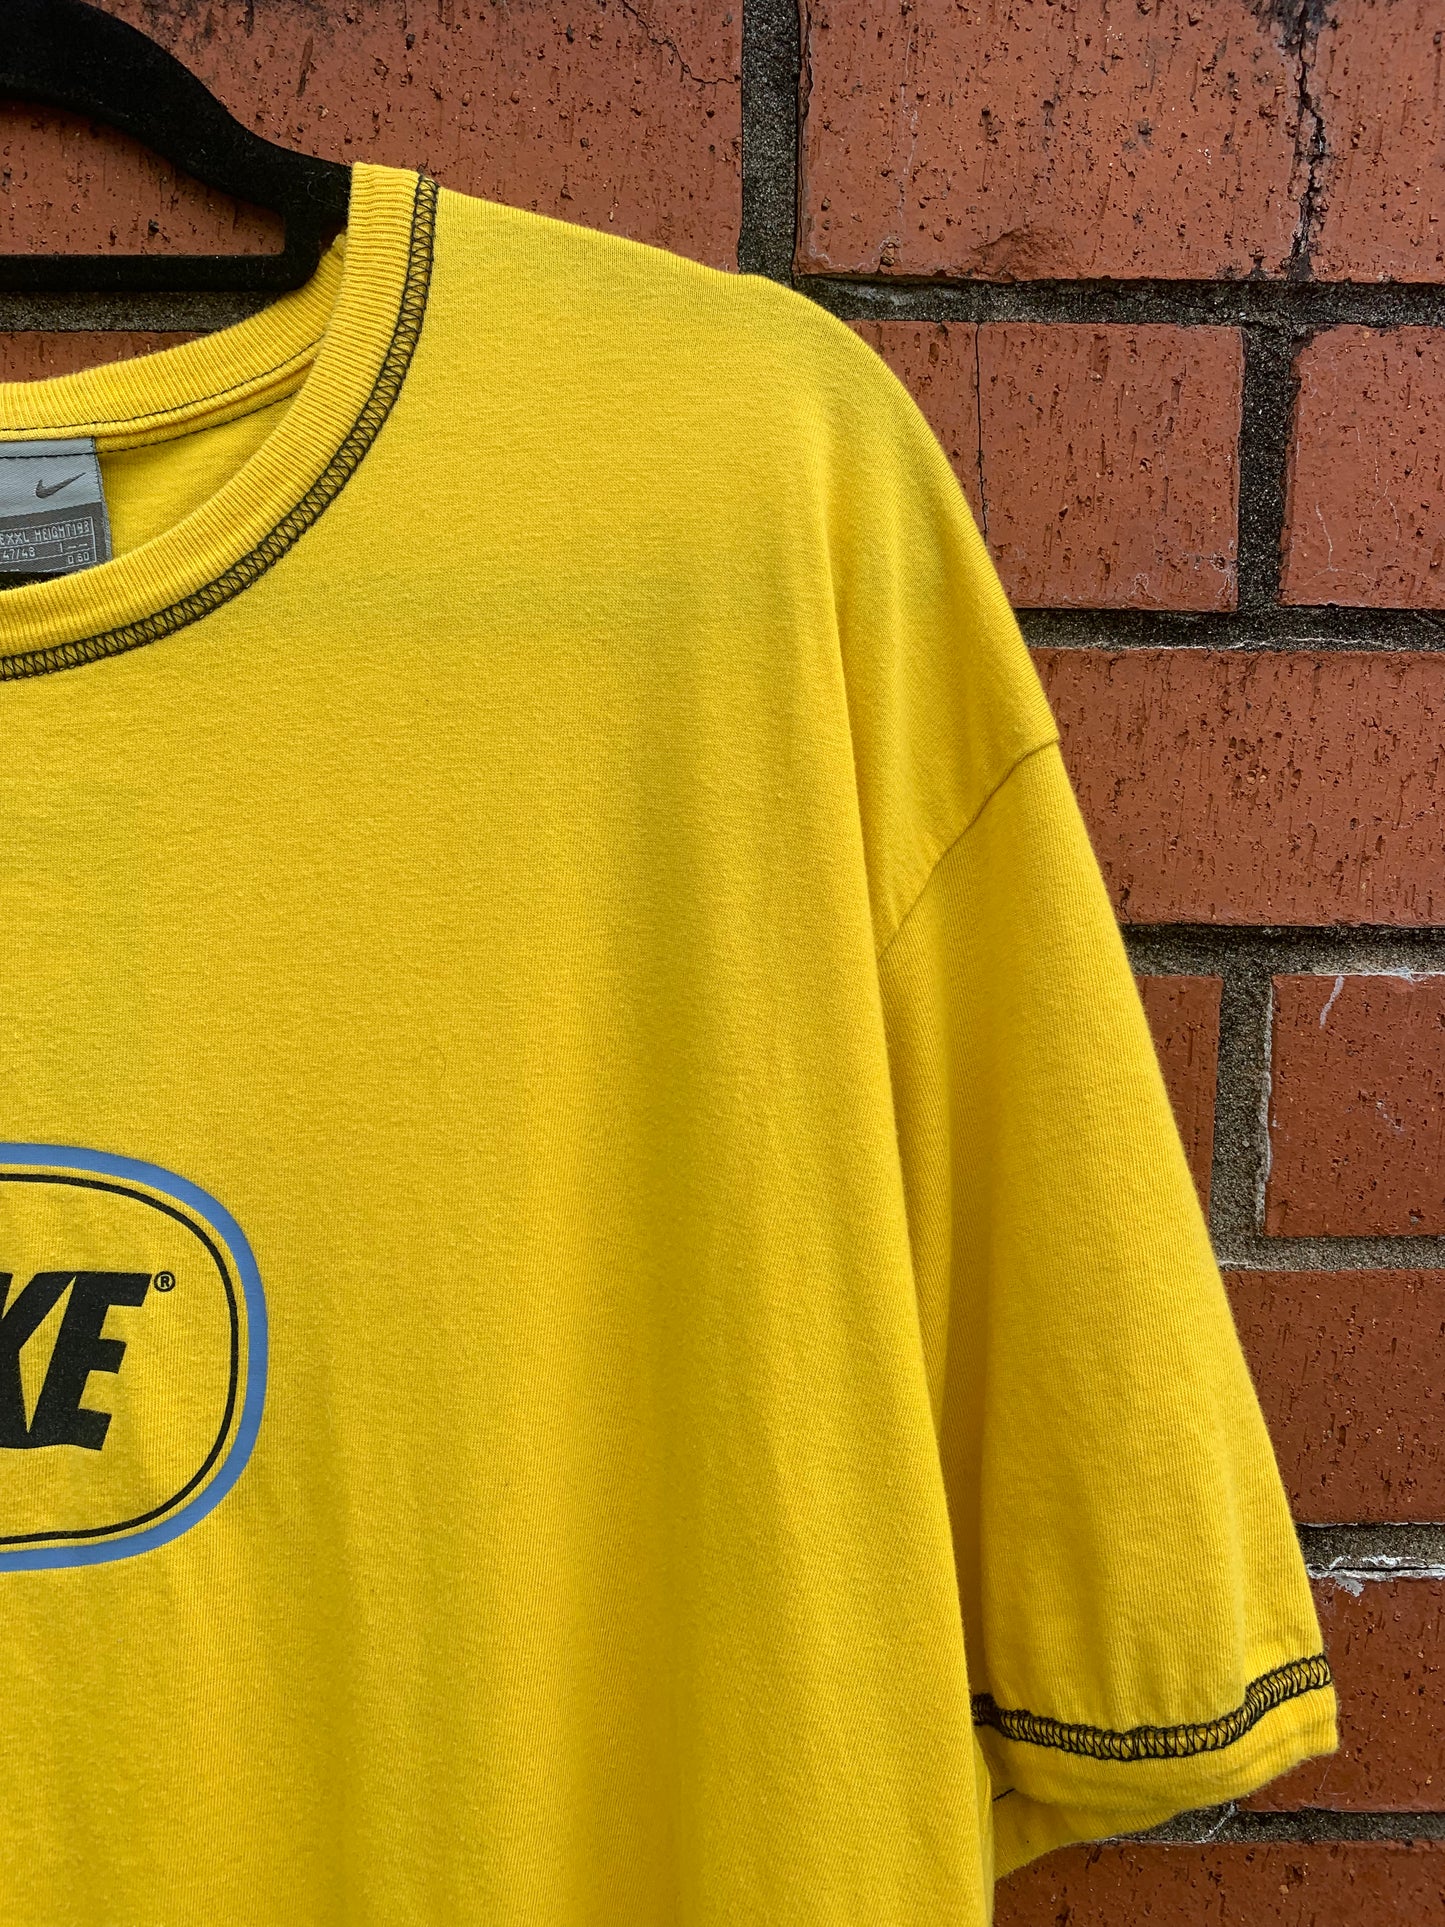 Vintage Nike Yellow Circle Logo Tee